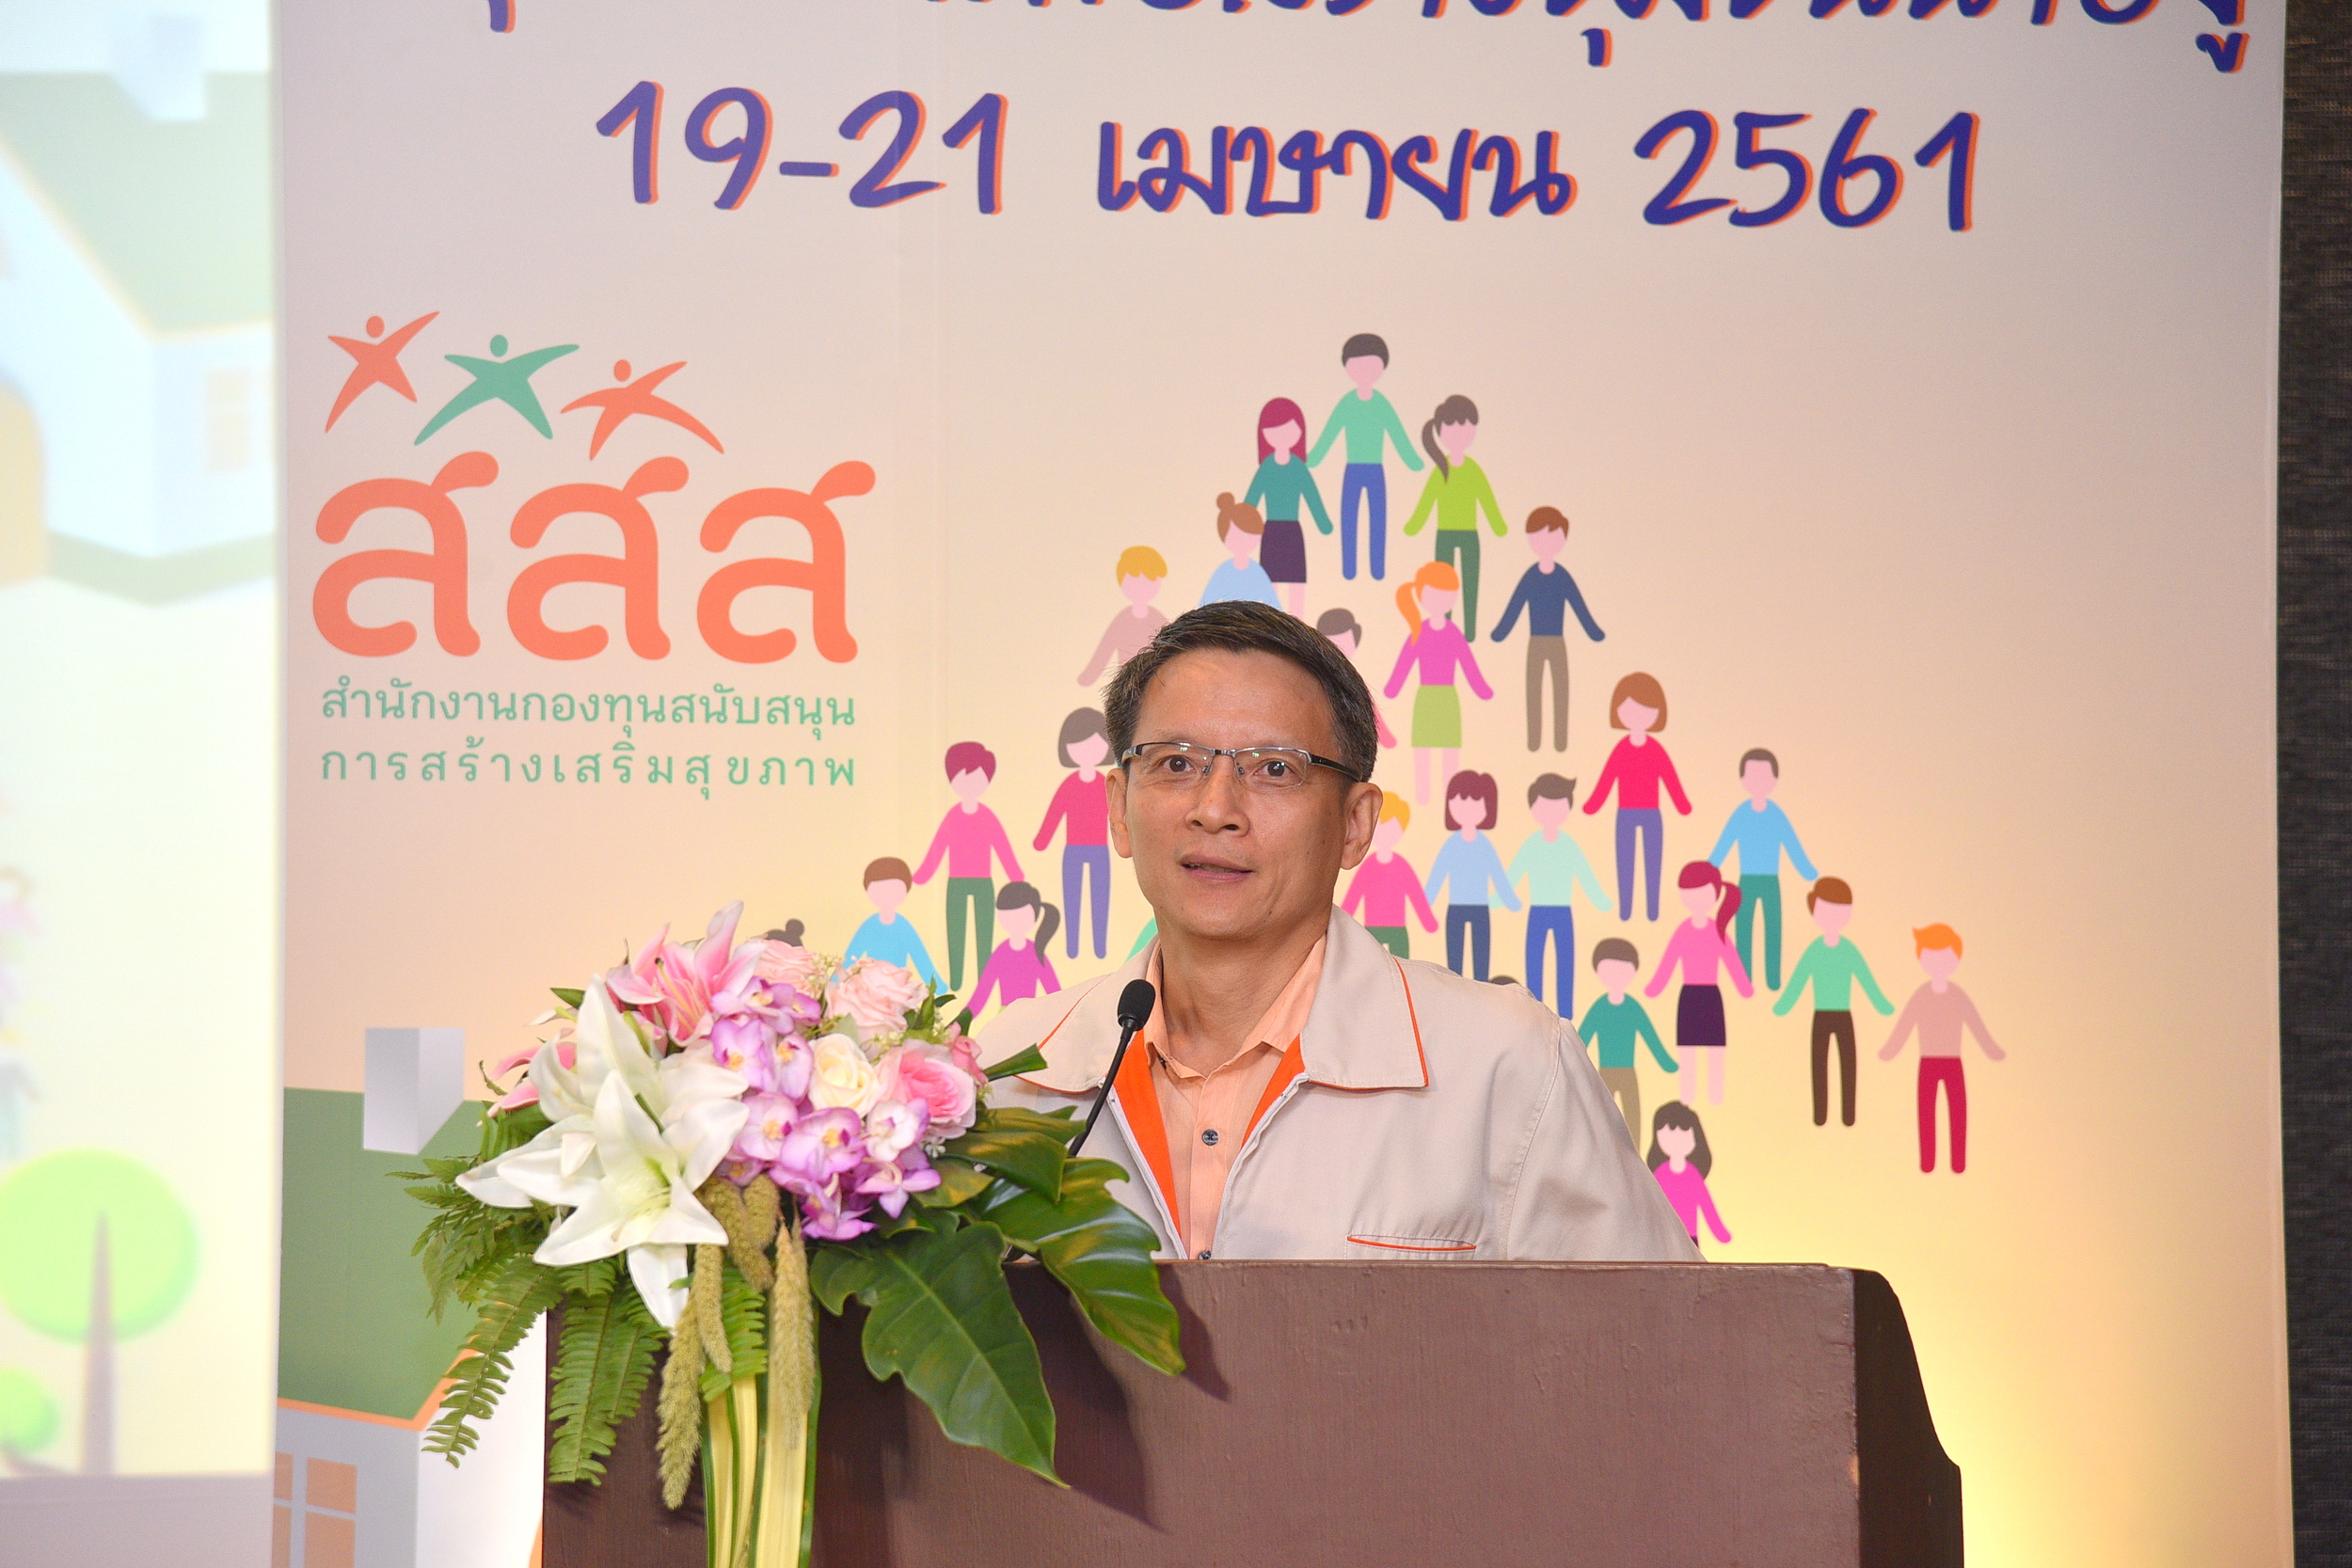 หนุน 'กลไกสภาผู้นำชุมชน' สร้างความเข้มแข็งให้ชุมชนยั่งยืน thaihealth